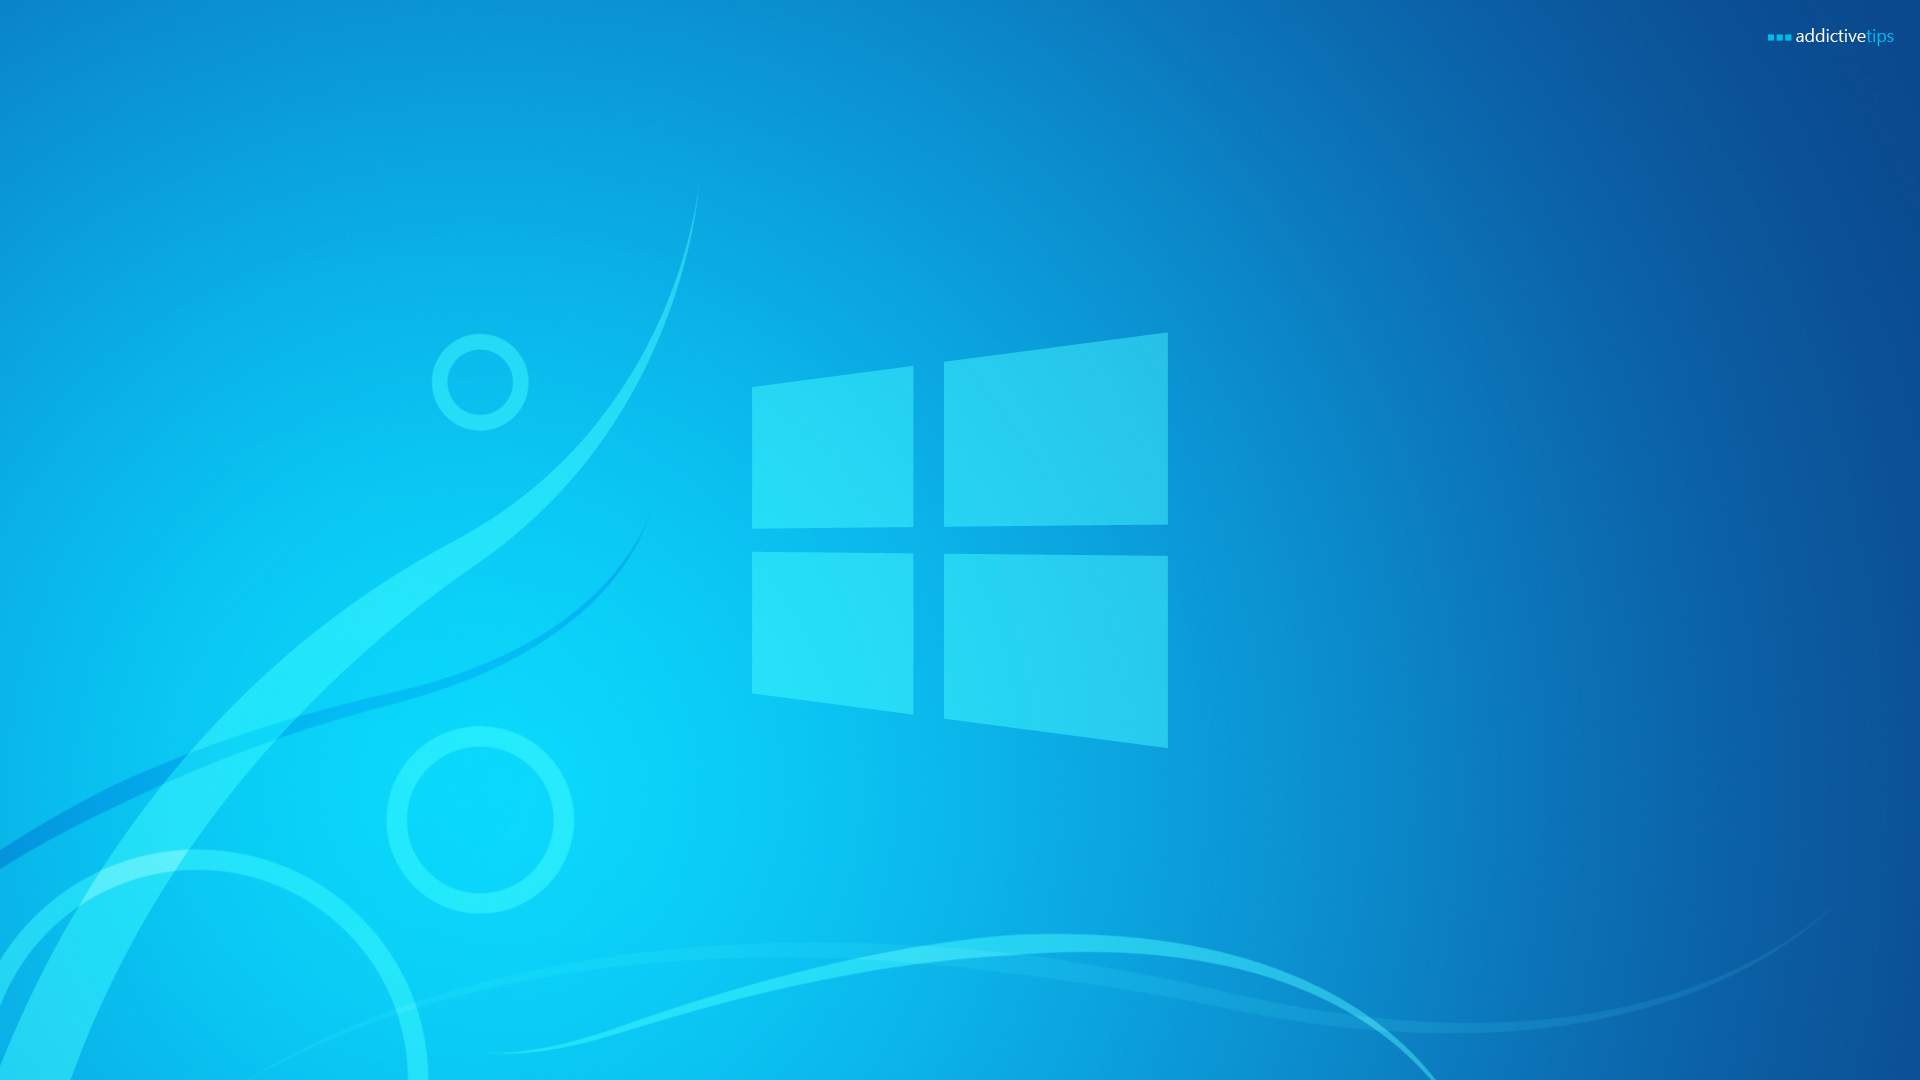 Tải hình nền Windows 8.1 miễn phí là một cách tuyệt vời để tùy chỉnh và làm mới giao diện máy tính của bạn. Hãy truy cập hình ảnh liên quan để khám phá các tùy chọn đa dạng và đẹp mắt nhất để thêm vào bộ sưu tập của bạn.